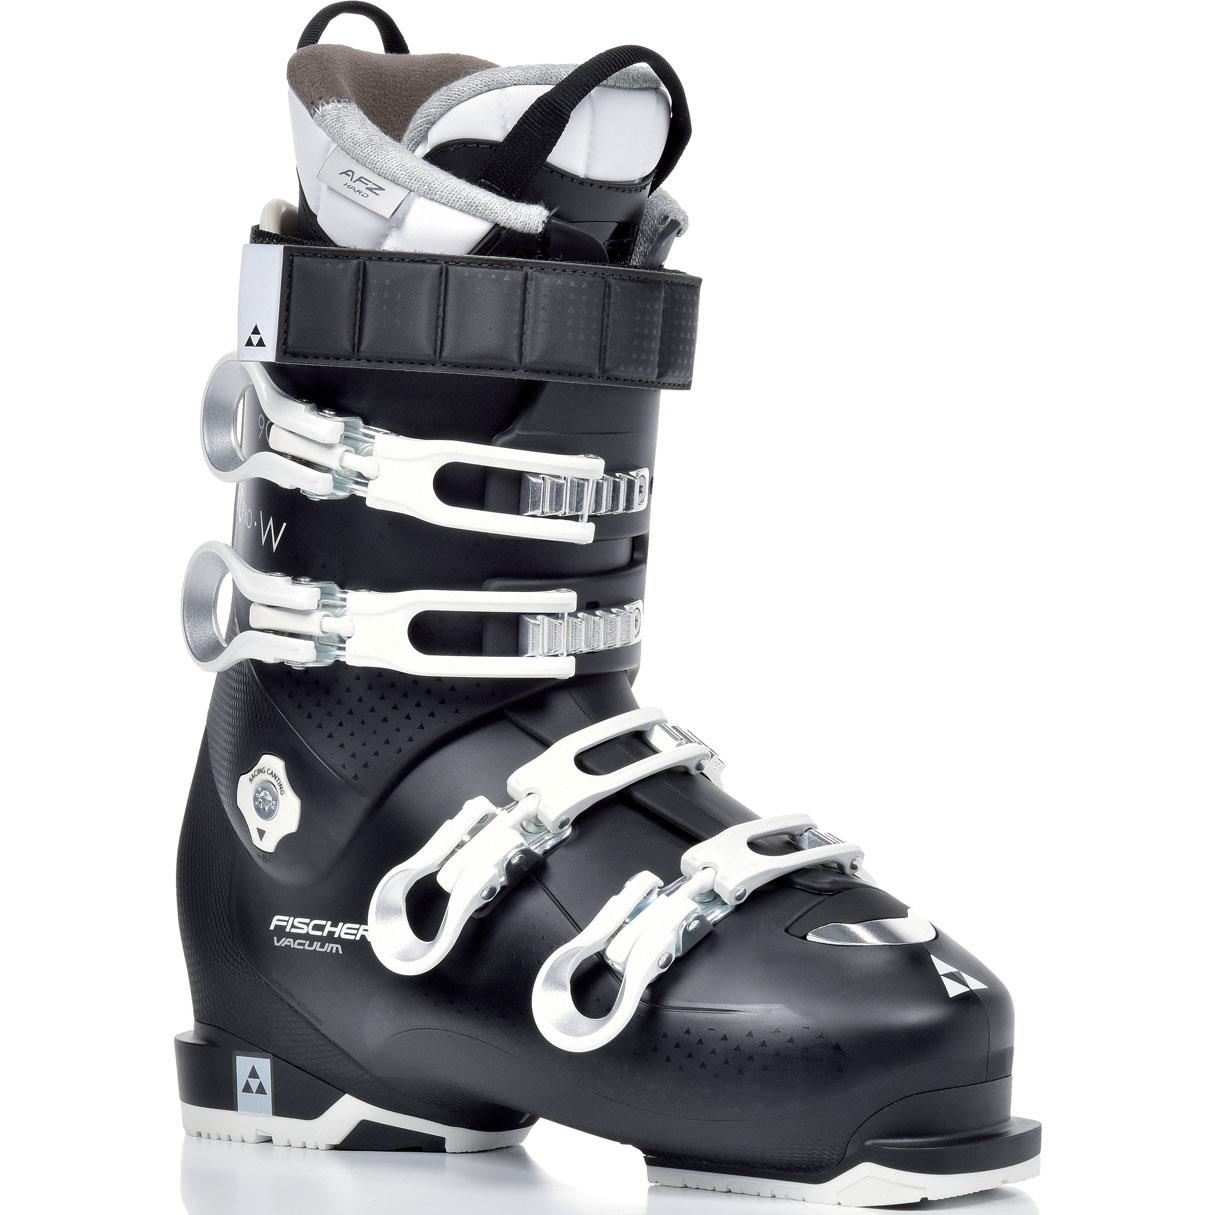 zwaarlijvigheid jongen Koloniaal Fischer RC Pro W 90 Vacuum Full Fit skischoenen dames black